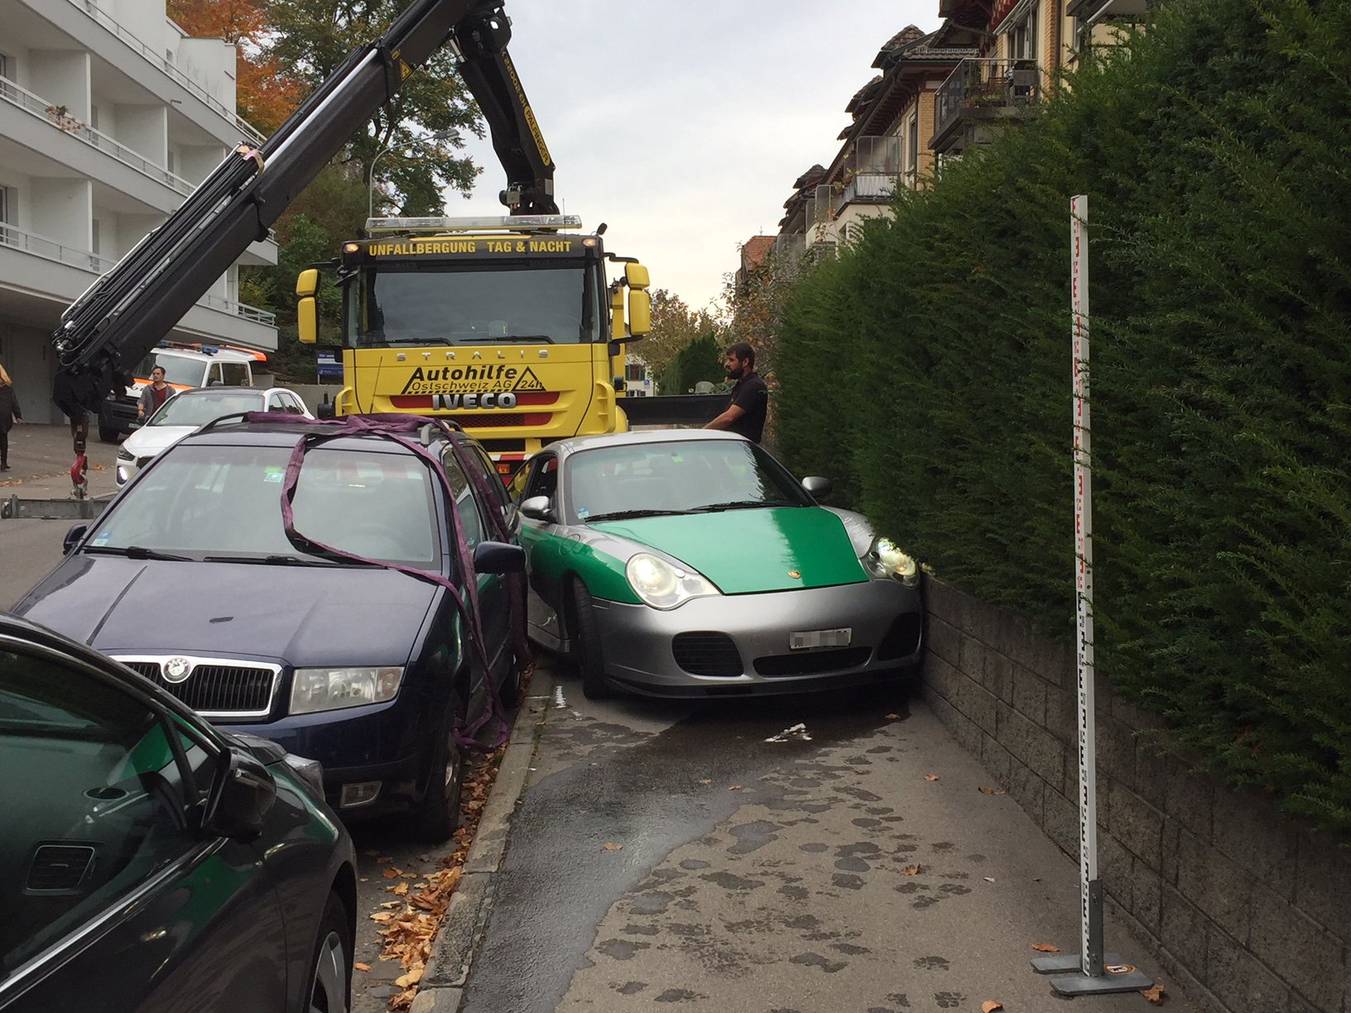 Weil die Bremsen versagt haben sollen, ist eine 48-Jährige mit ihrem Porsche in eine Mauer geprallt